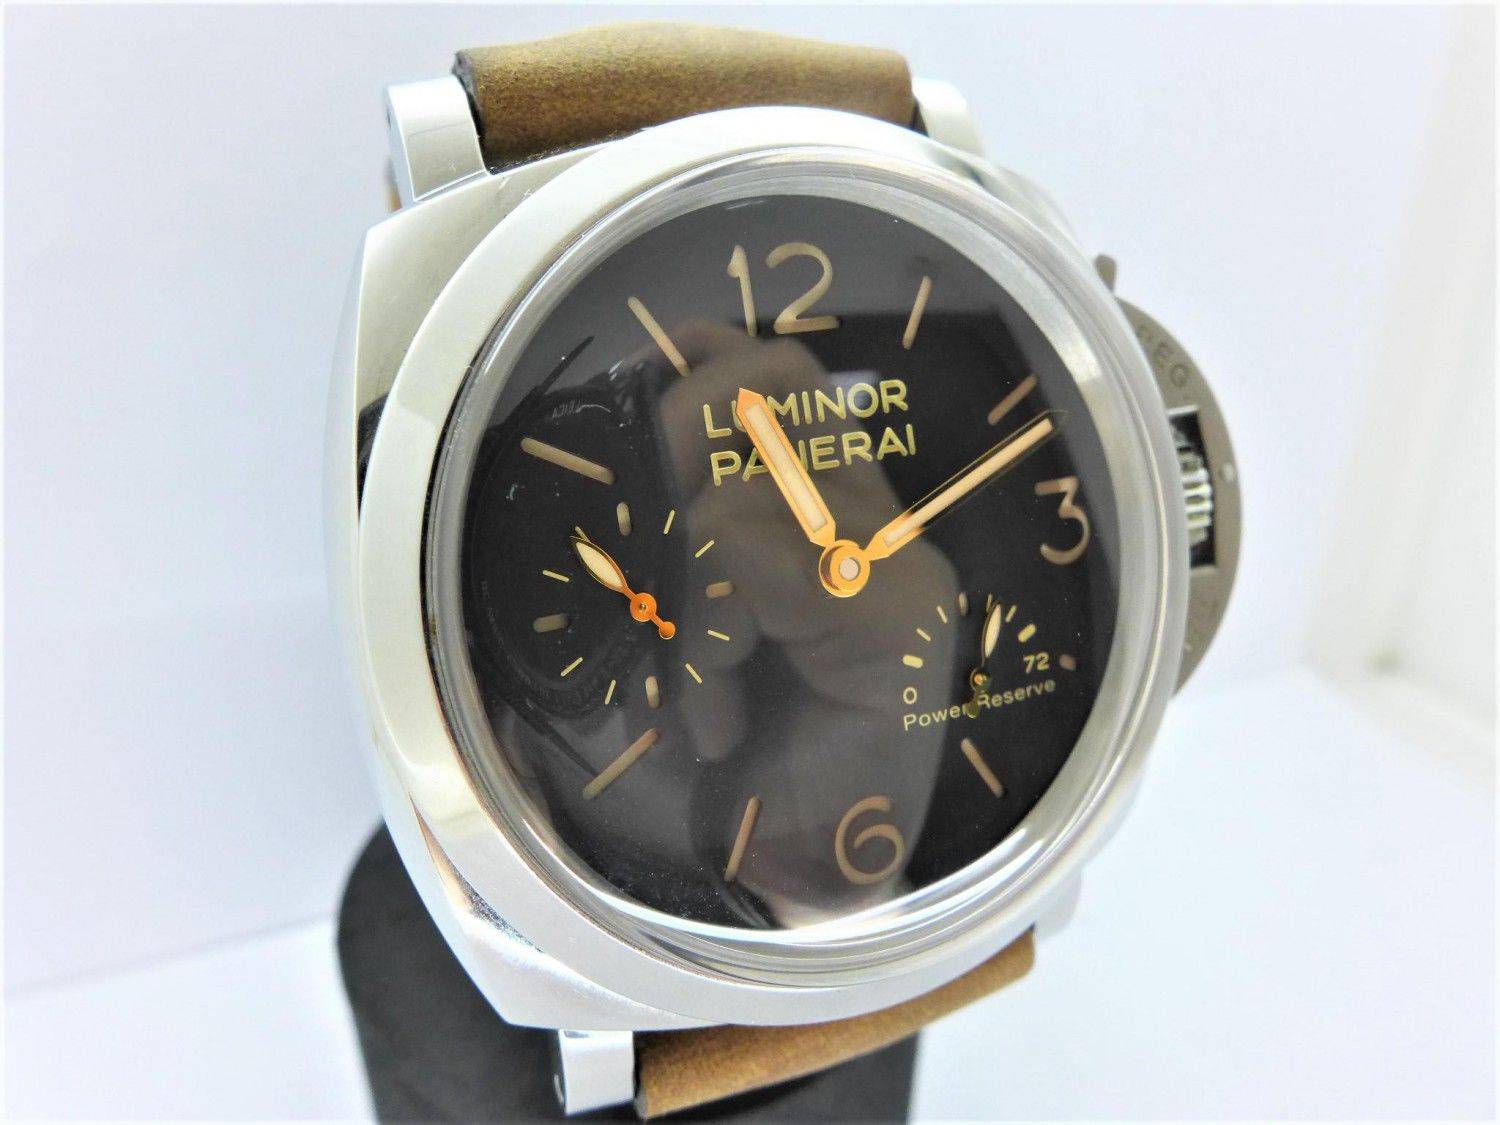 PANERAI 沛納海 Luminor 1950 PAM00423 47毫米腕錶 n0196